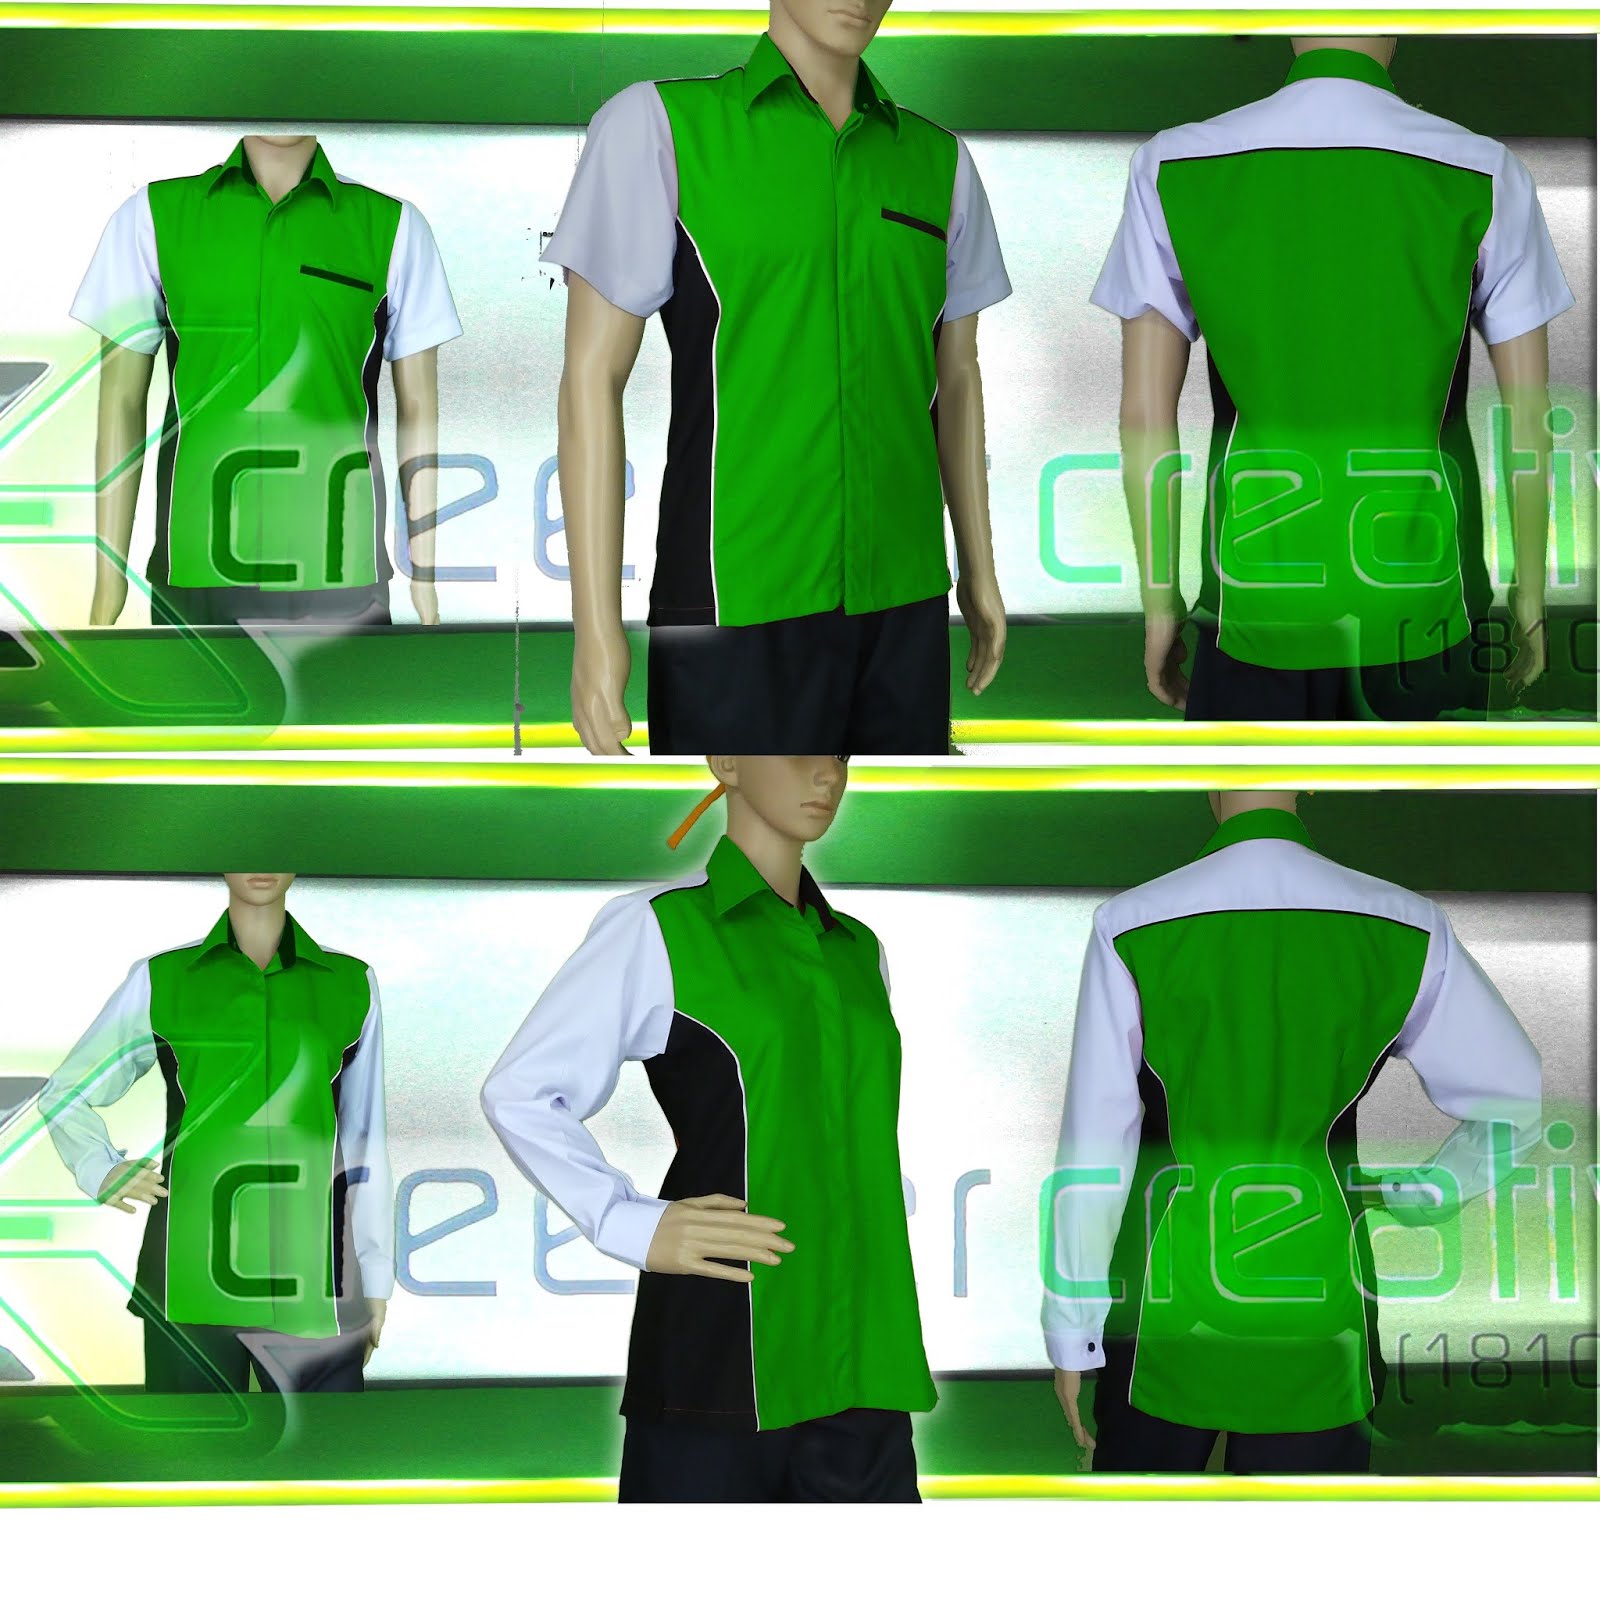 Designs for Uniforms Ukuran baju Korporat  Wanita